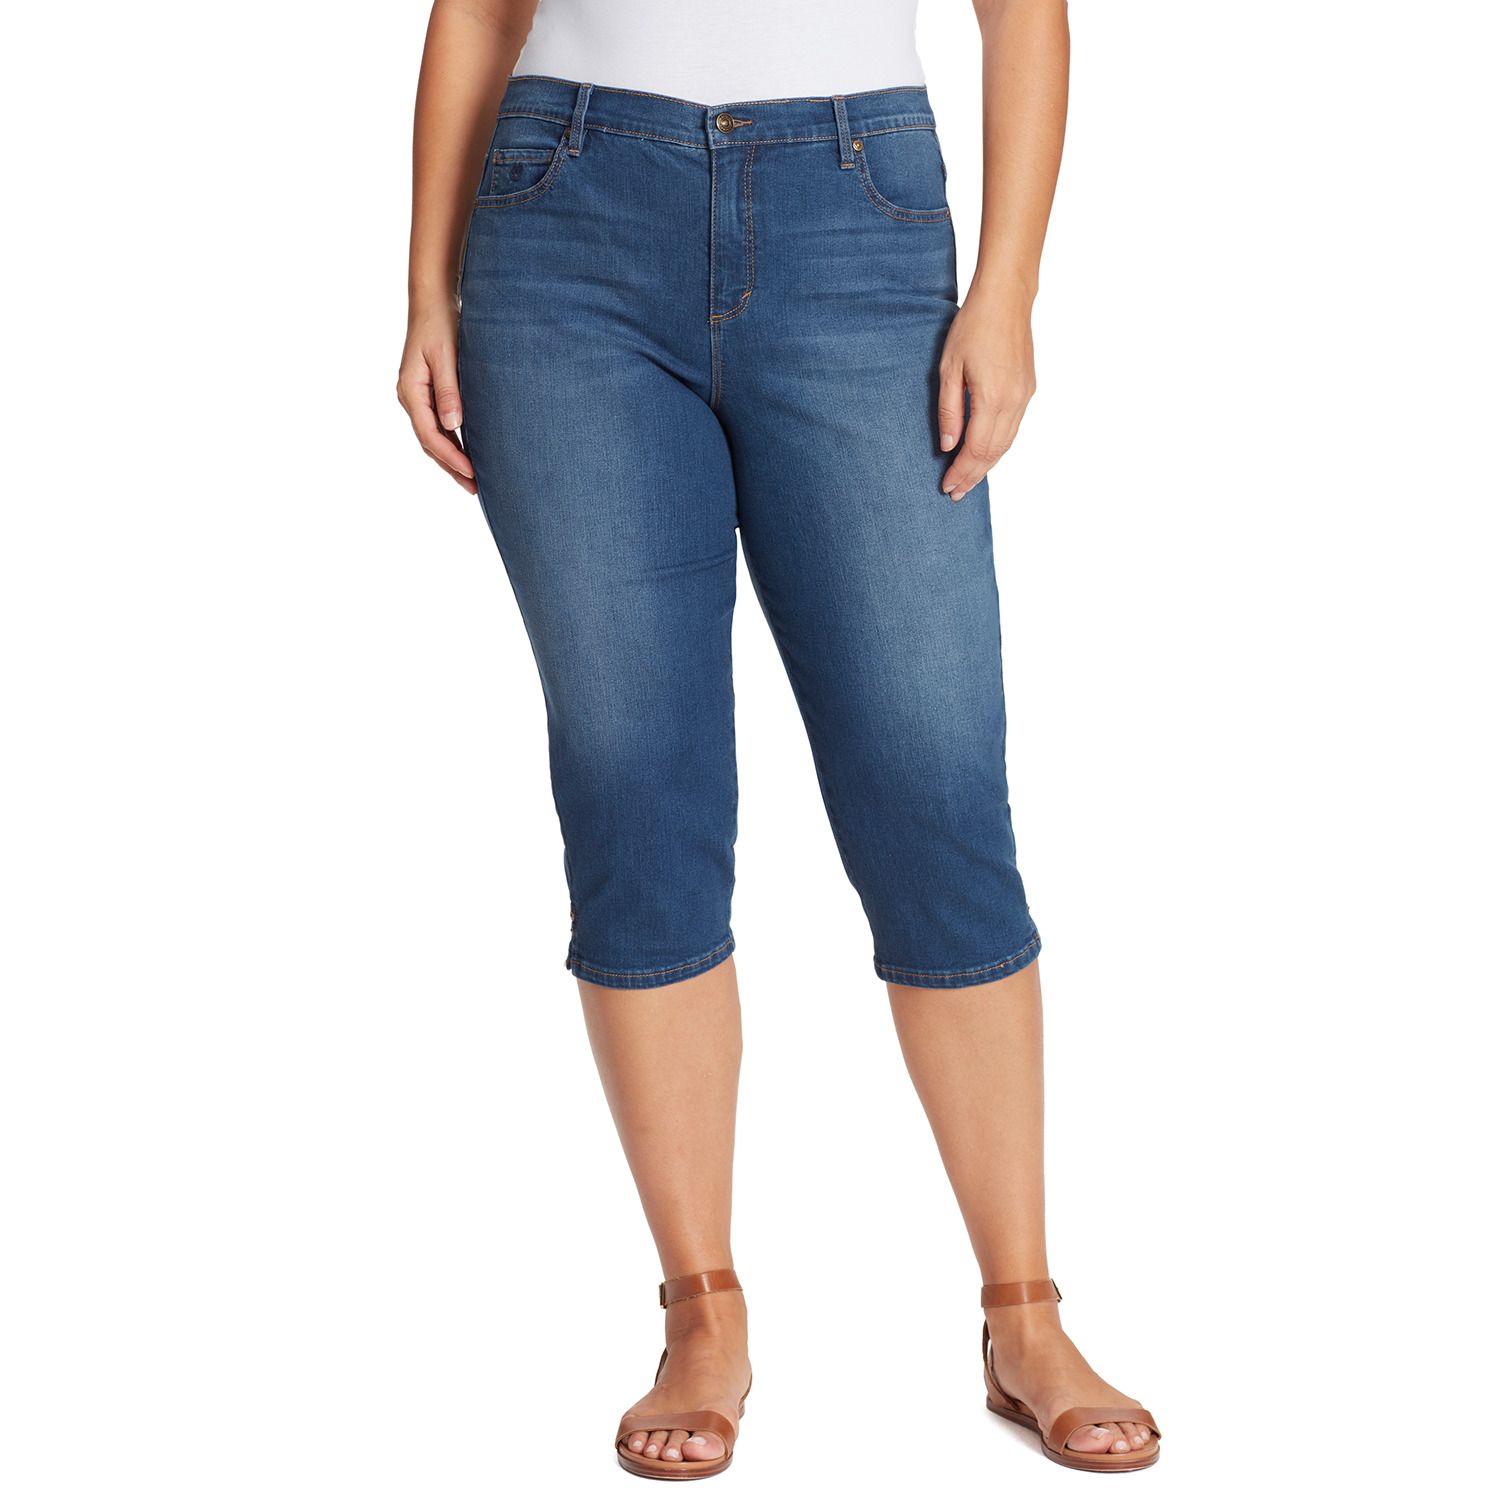 gloria vanderbilt capri jeans plus size